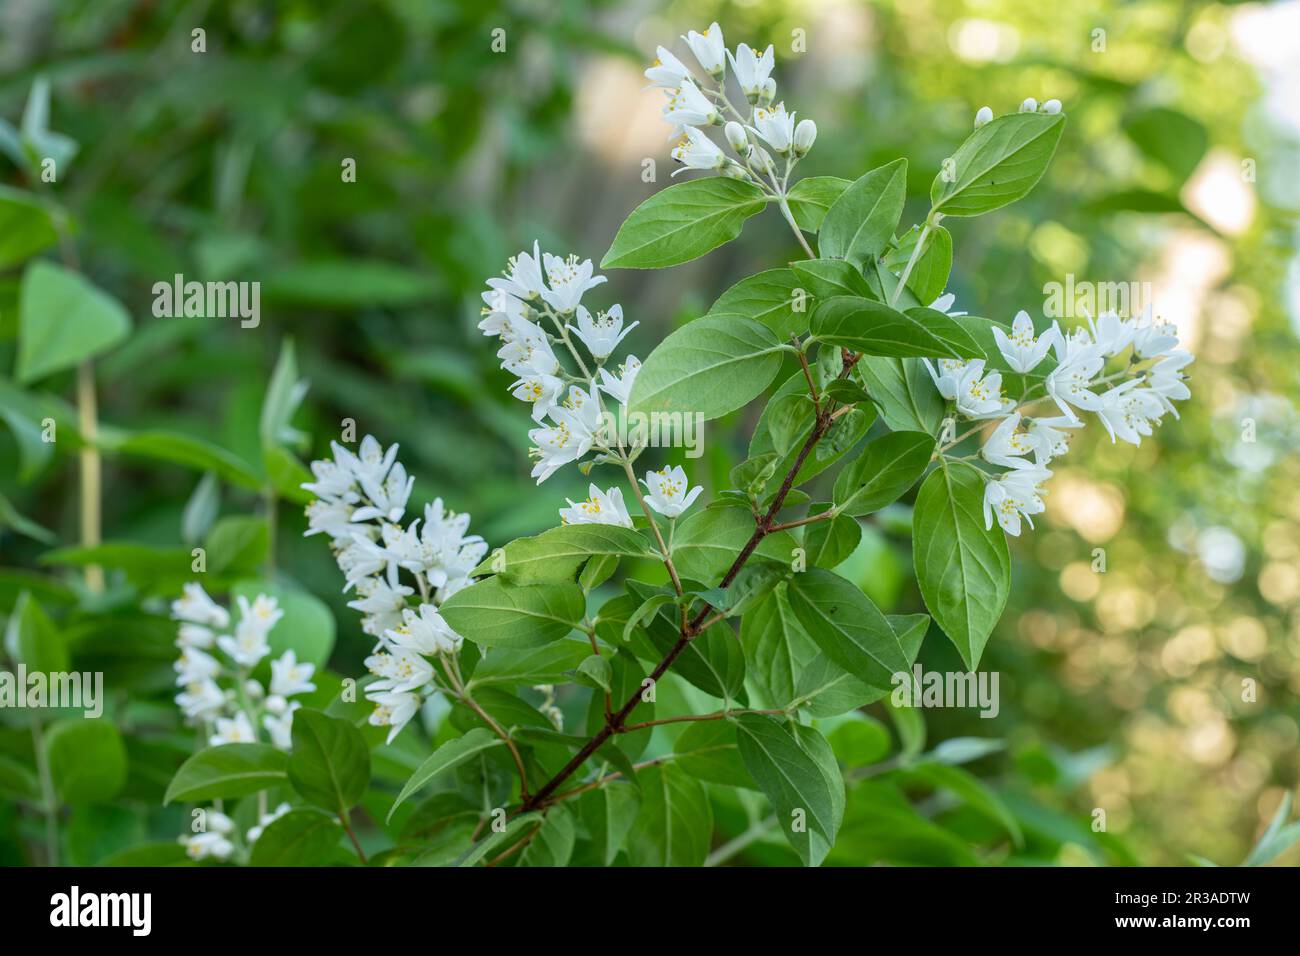 Flowering deutzia (Deutzia) in the garden, closeup Stock Photo